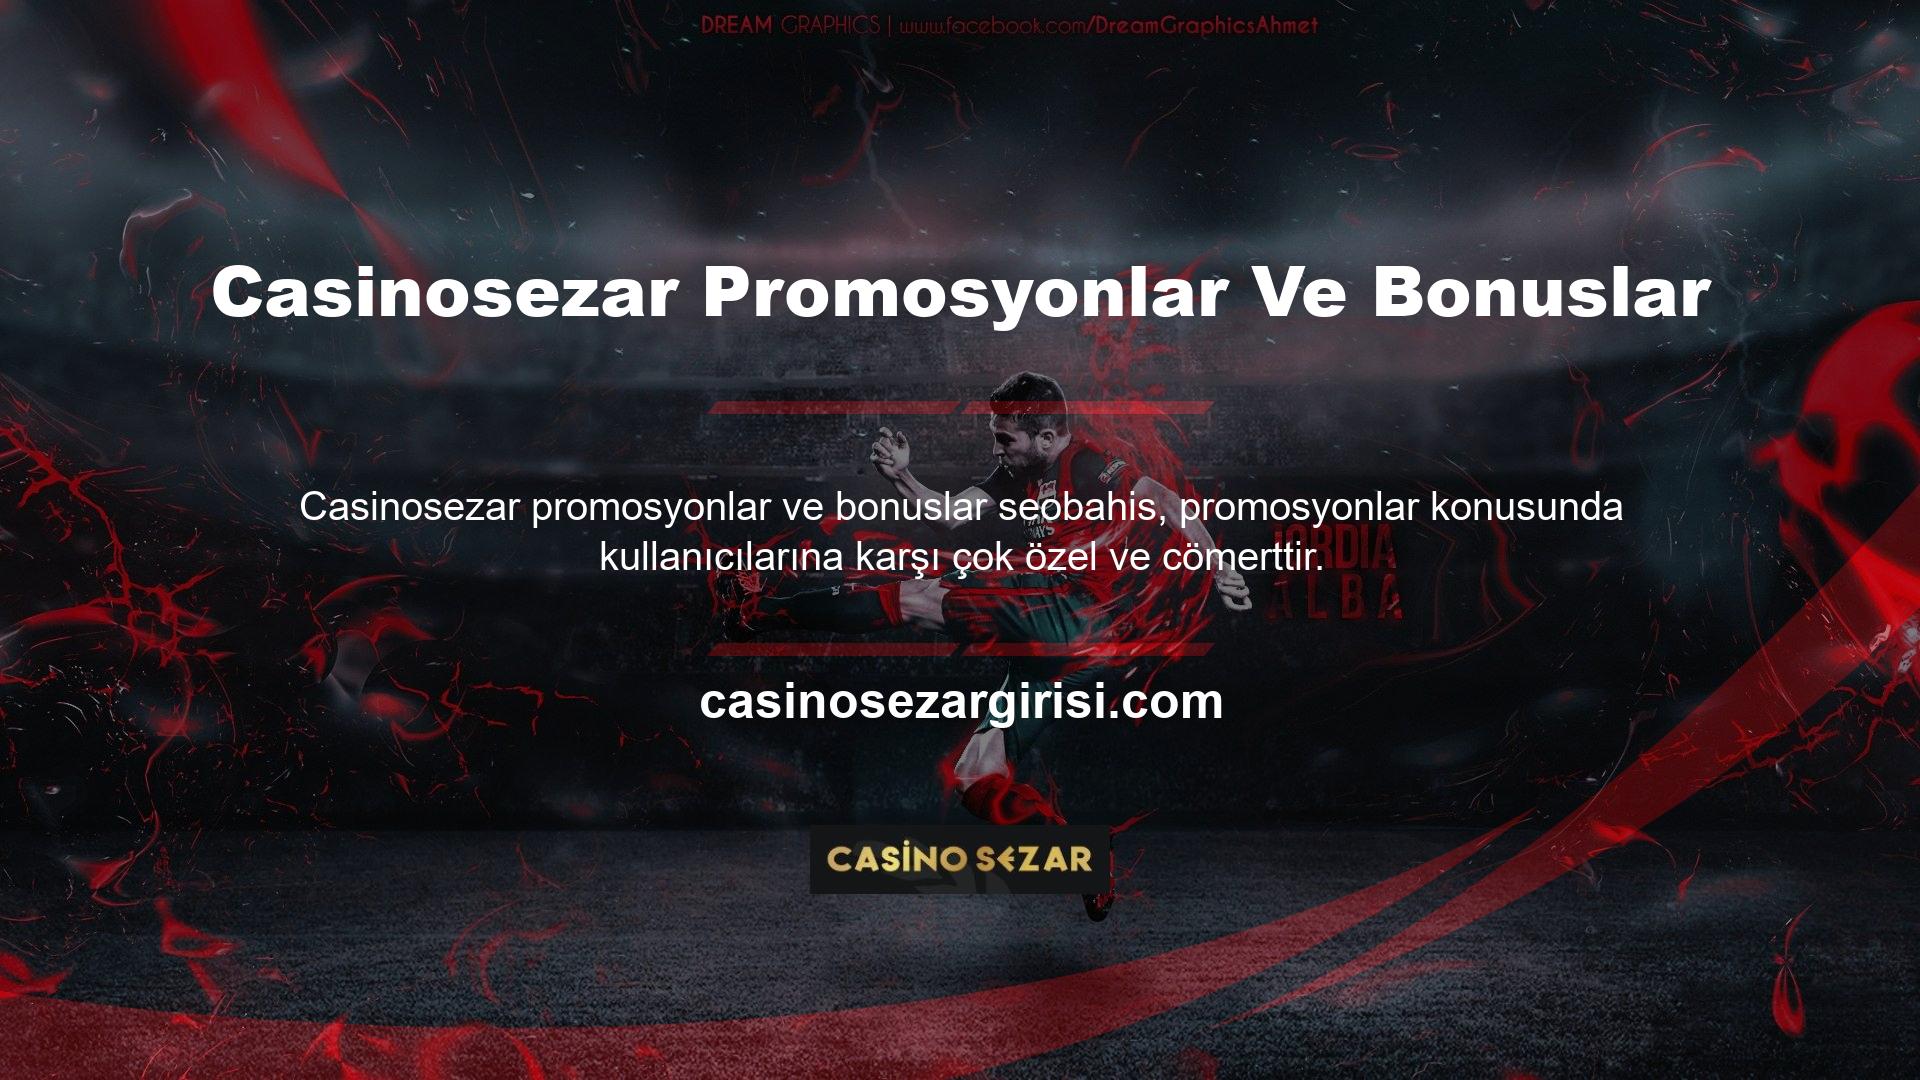 Başka hiçbir web sitesi Casinosezar promosyonları ve bonusları sunmuyor ve bu kadar çok bonus dağıtma konusunda bu kadar cömert değil